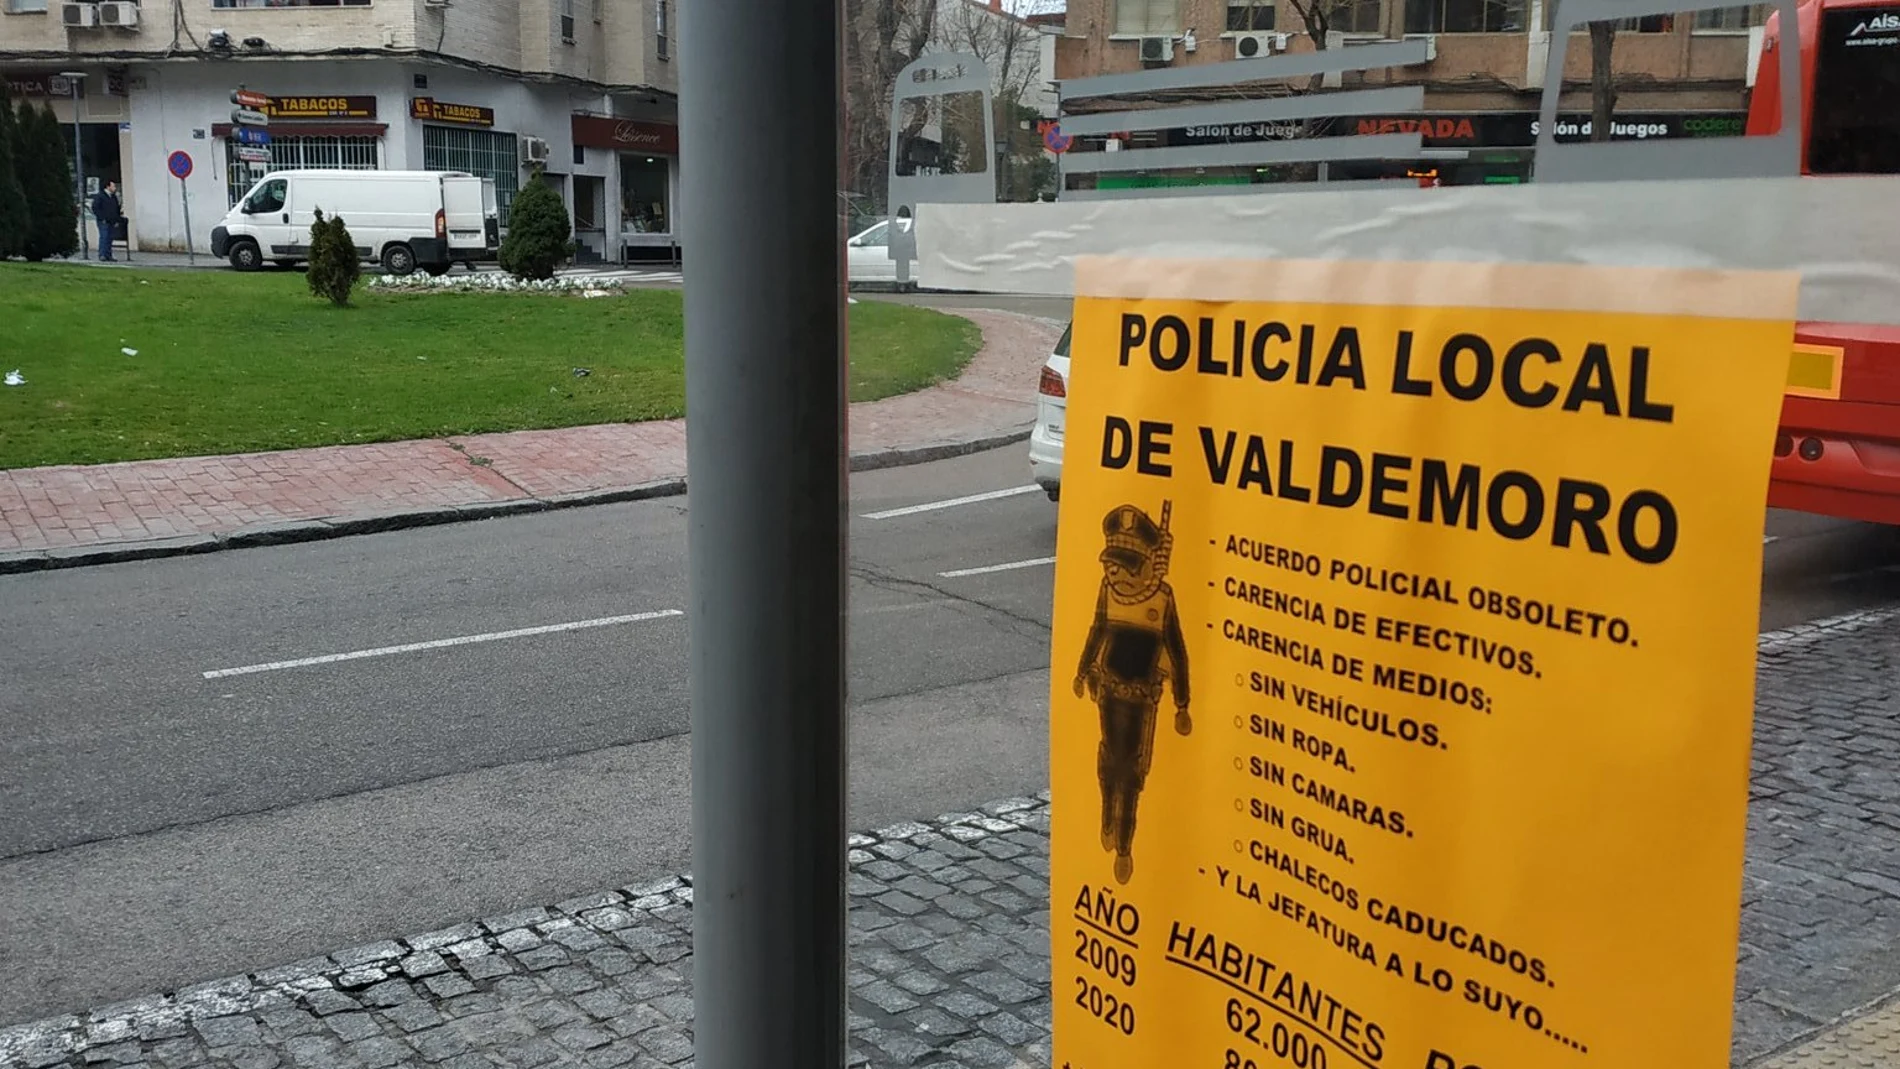 La Policía Local del municipio de Valdemoro colgó carteles para llamar la atención acerca de las condiciones precarias laborales que les afectan